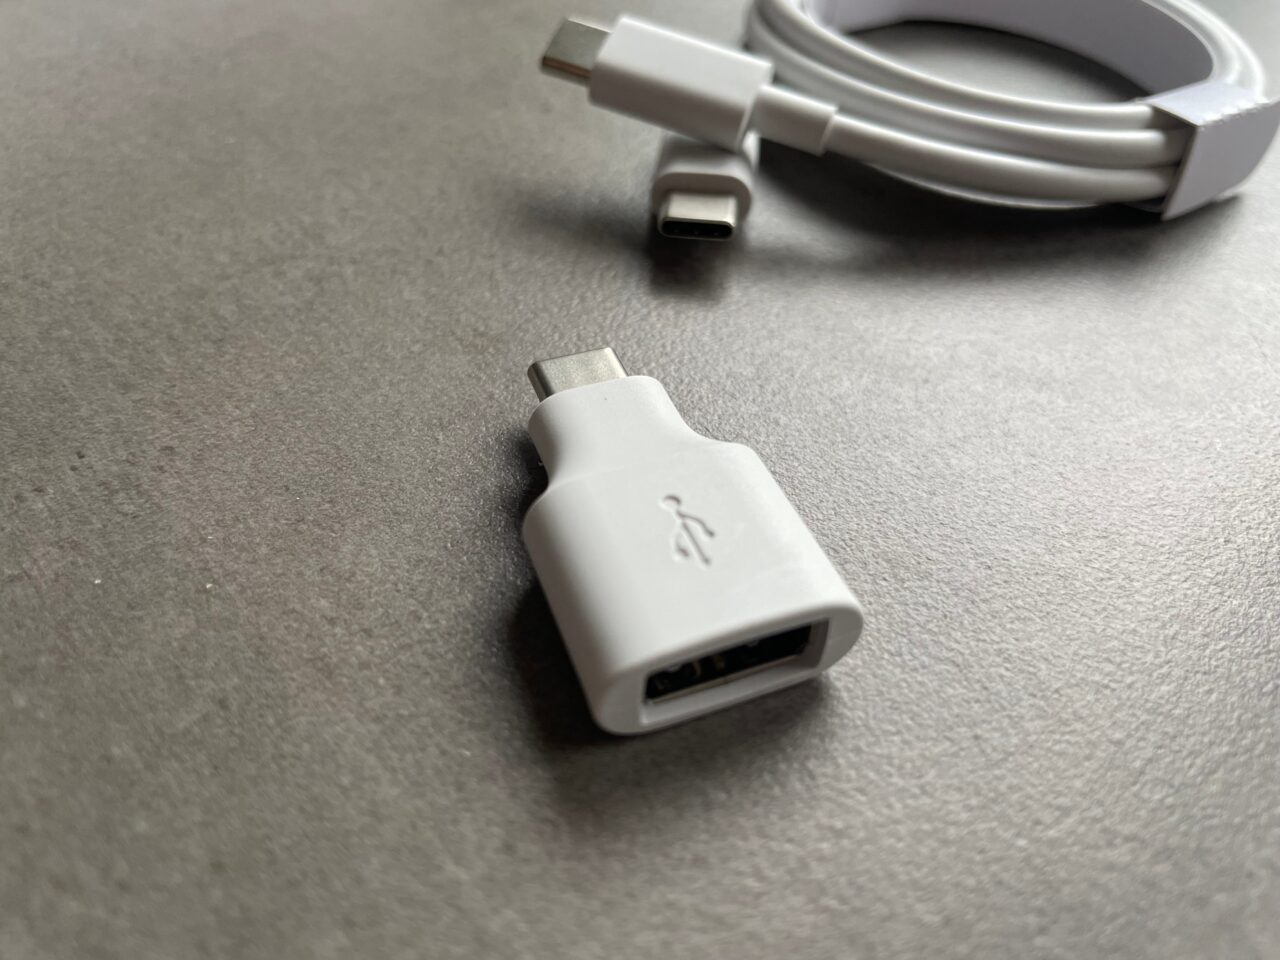 Biały adapter USB-C na szarym tle z widocznym logo USB i zgietym białym kablem z wtyczką USB-C w tle.